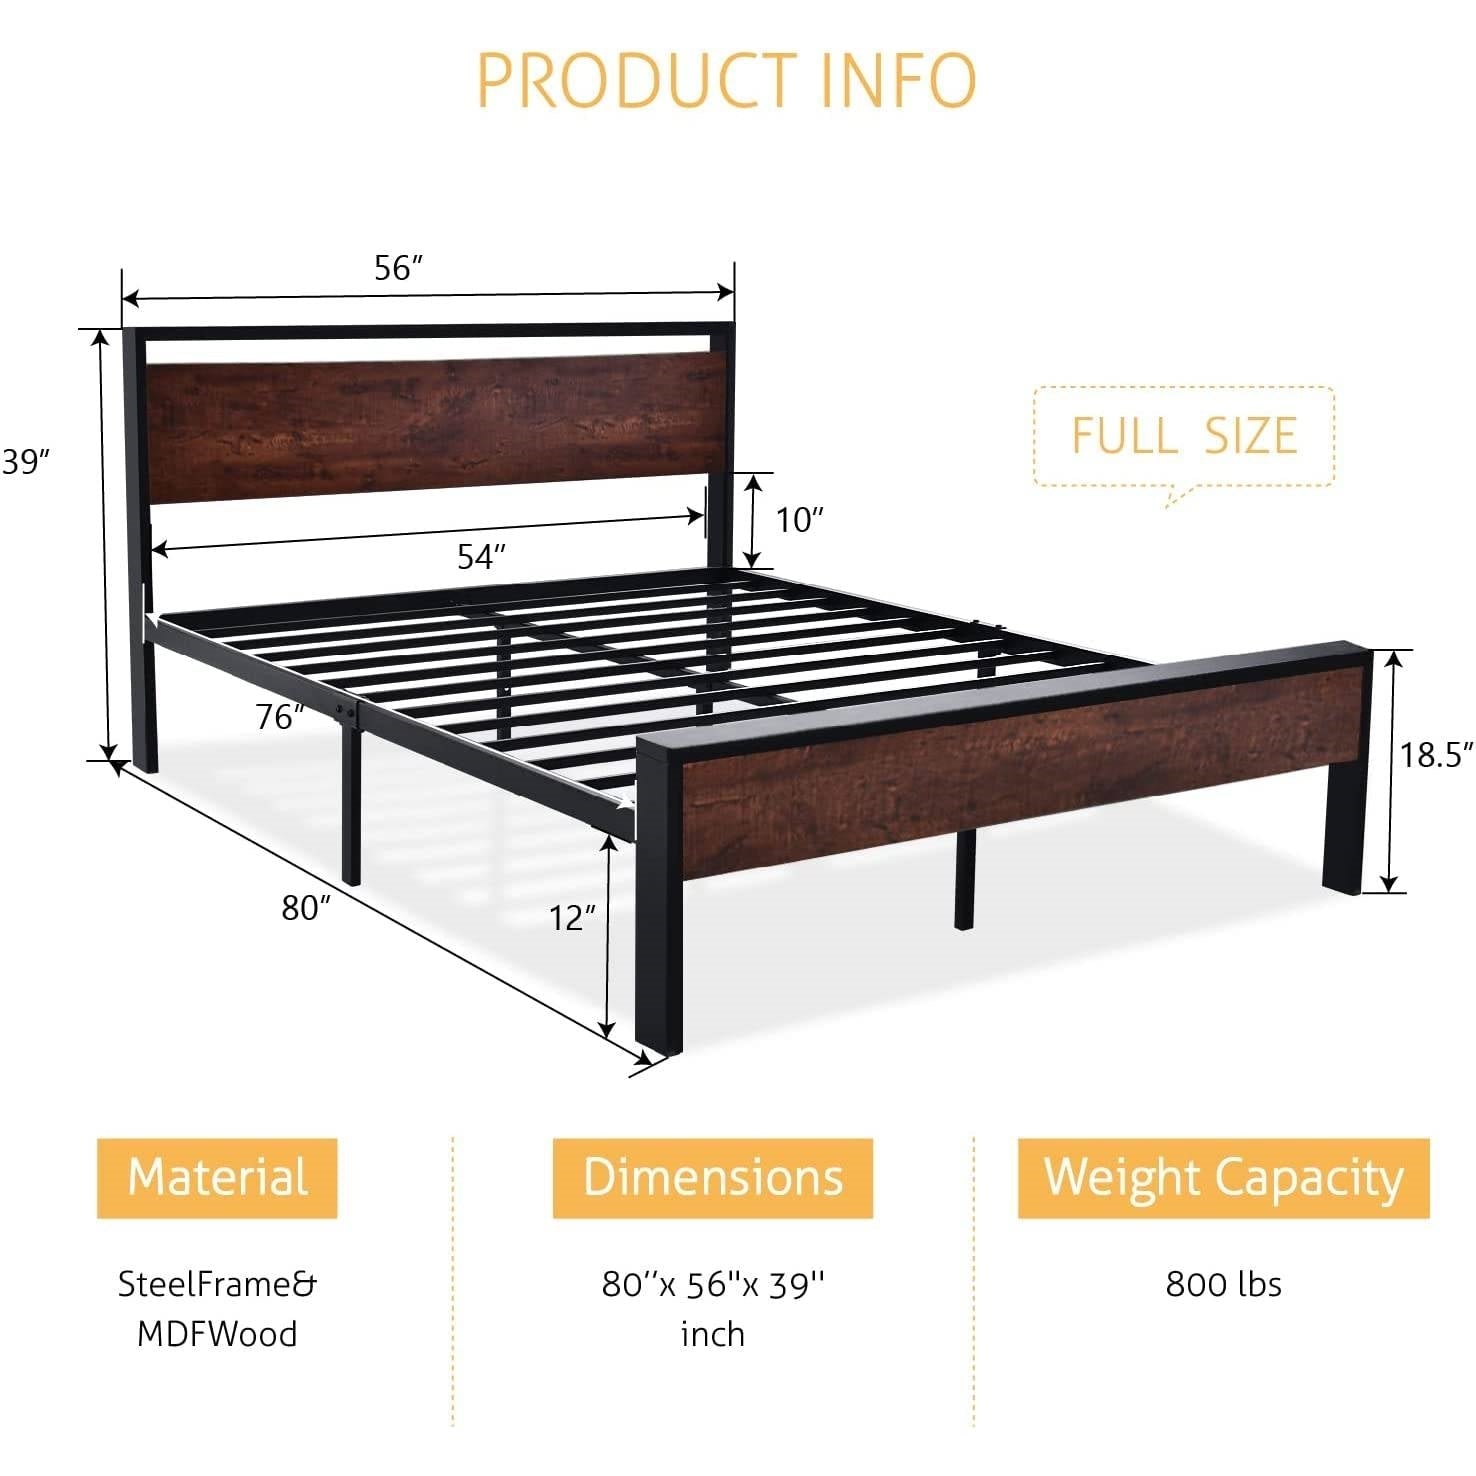 Bedroom > Bed Frames > Platform Beds - Full Metal Platform Bed Frame With Mahogany Wood Panel Headboard Footboard